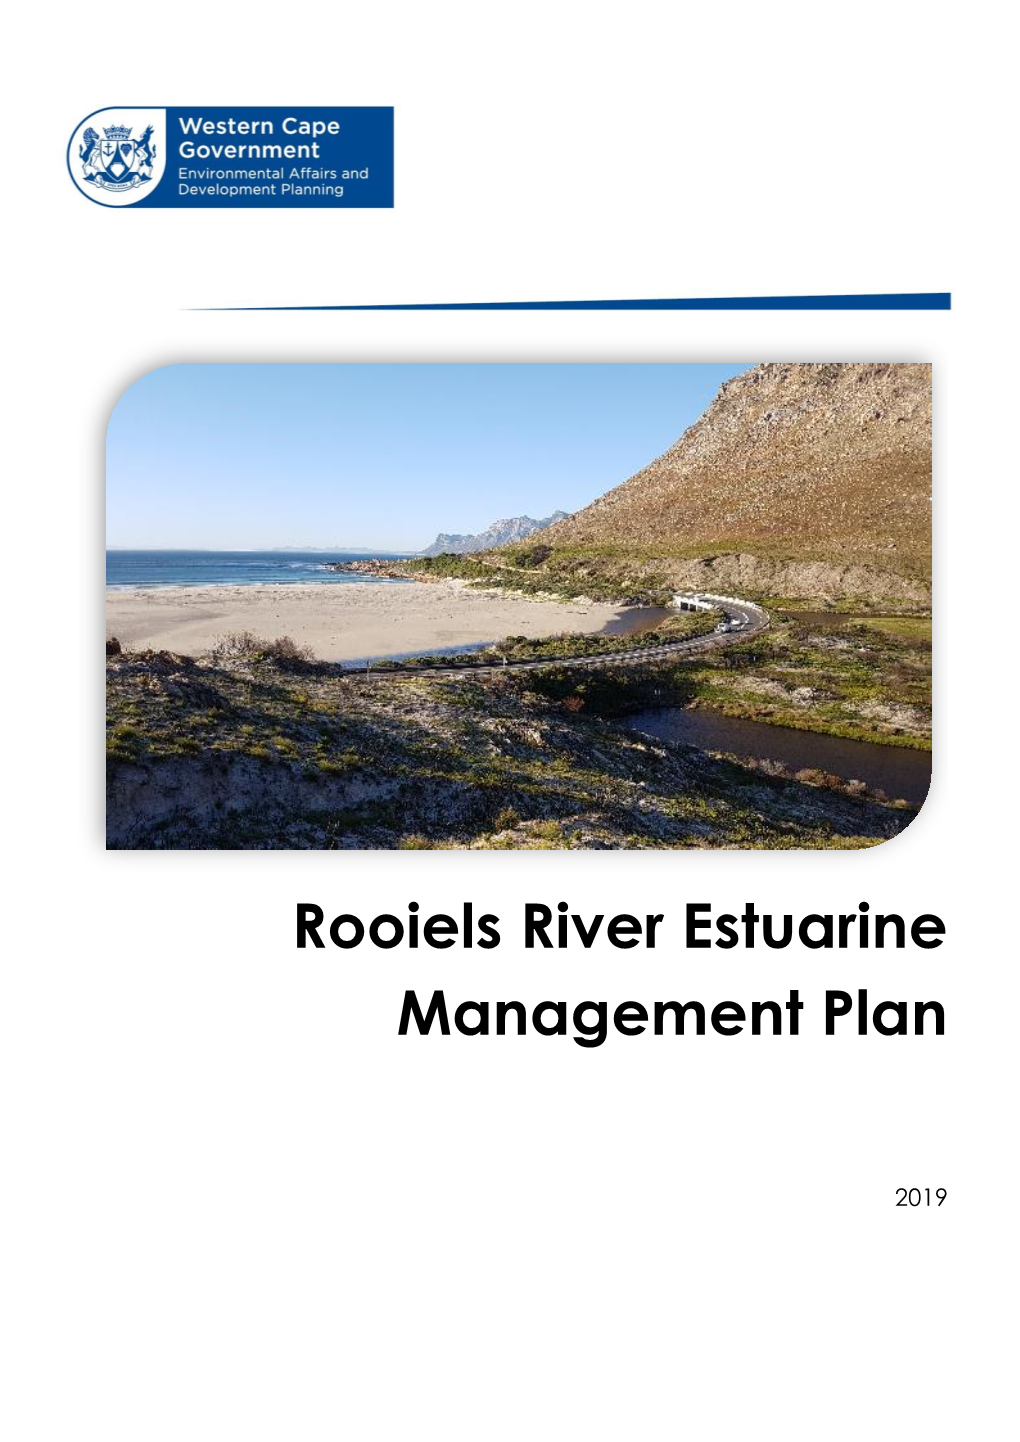 Rooiels River Estuarine Management Plan